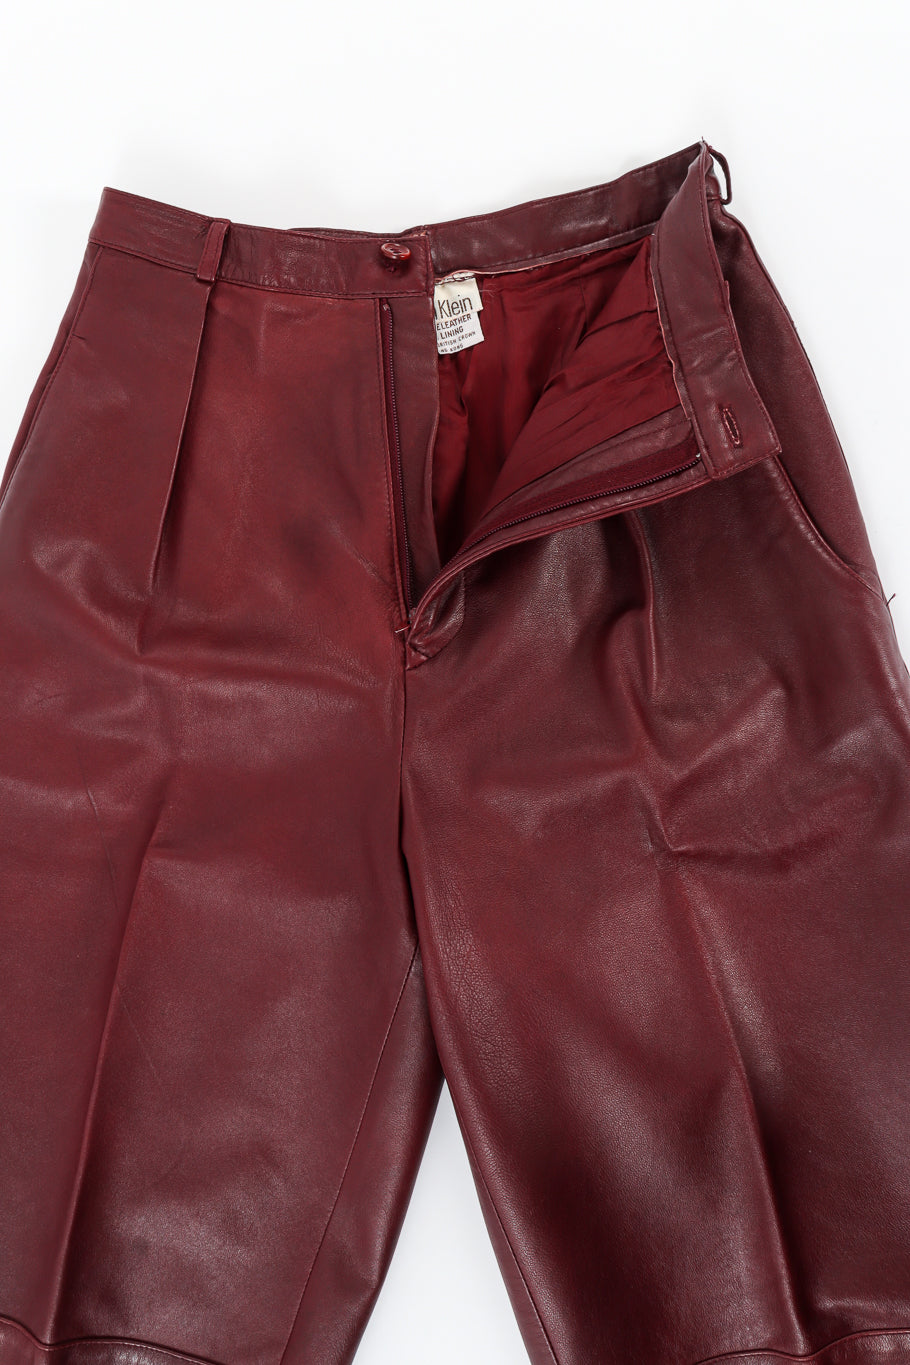 Vintage Calvin Klein Leather Shirt & Pant Set opened/unzipped @ Recess LA